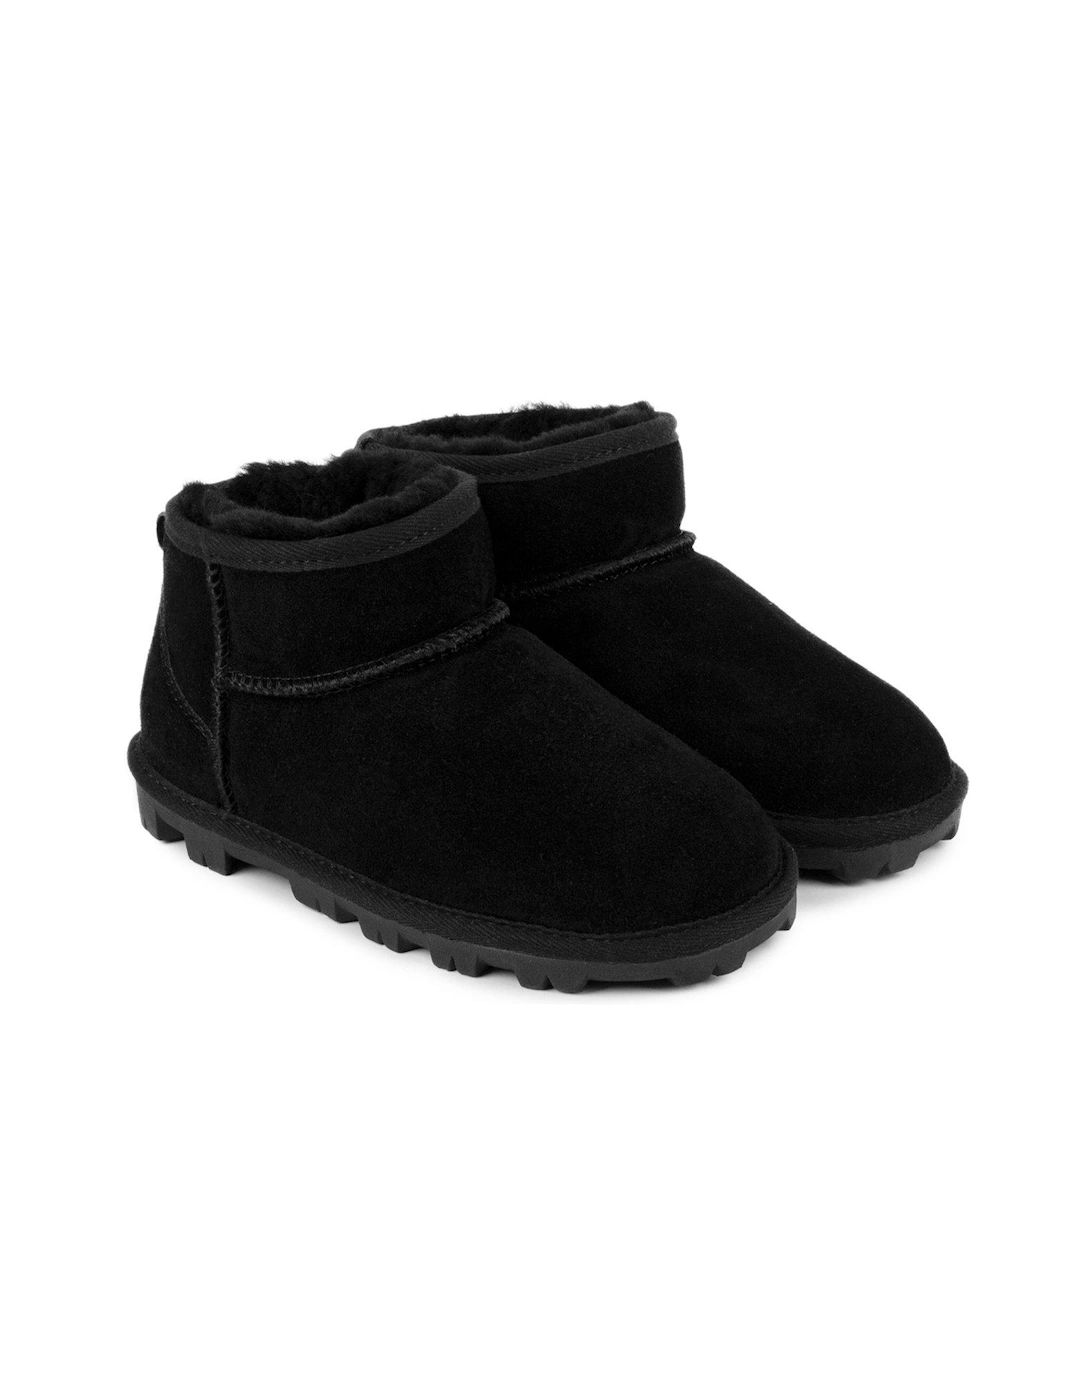 Grace mini boots - Black, 2 of 1